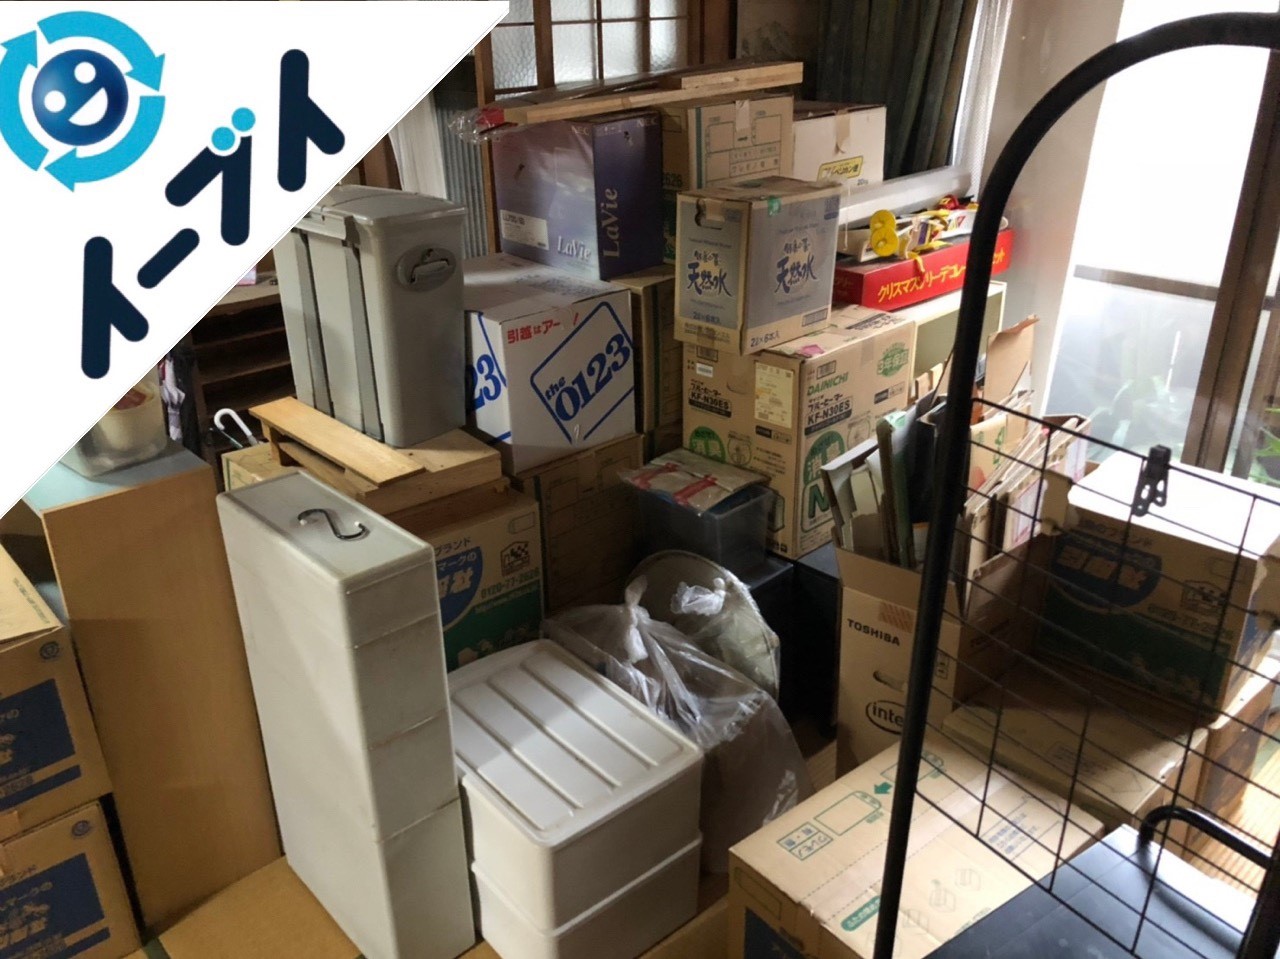 2018年12月27日大阪府堺市堺区で引っ越しに伴い整理された不用品の回収をしました。写真2